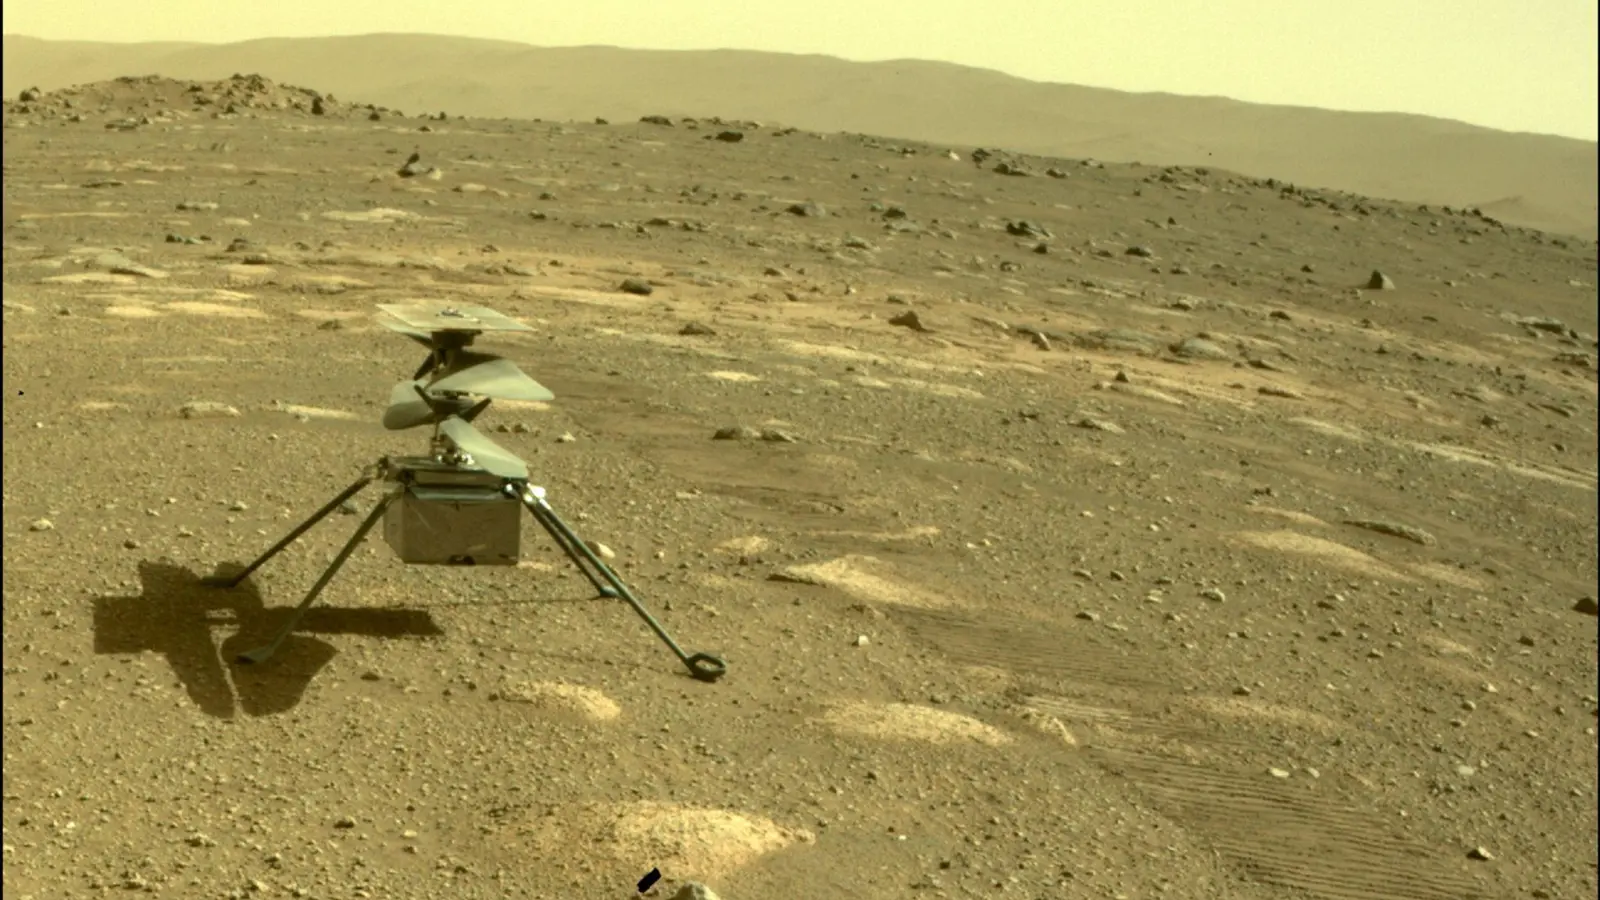 Der Hubschrauber „Ingenuity“ der US-Raumfahrtbehörde Nasa zu sehen auf dem Mars, aufgenommen von der hinteren Kamera des Rovers „Perseverance“. (Foto: NASA/JPL-Caltech/dpa)